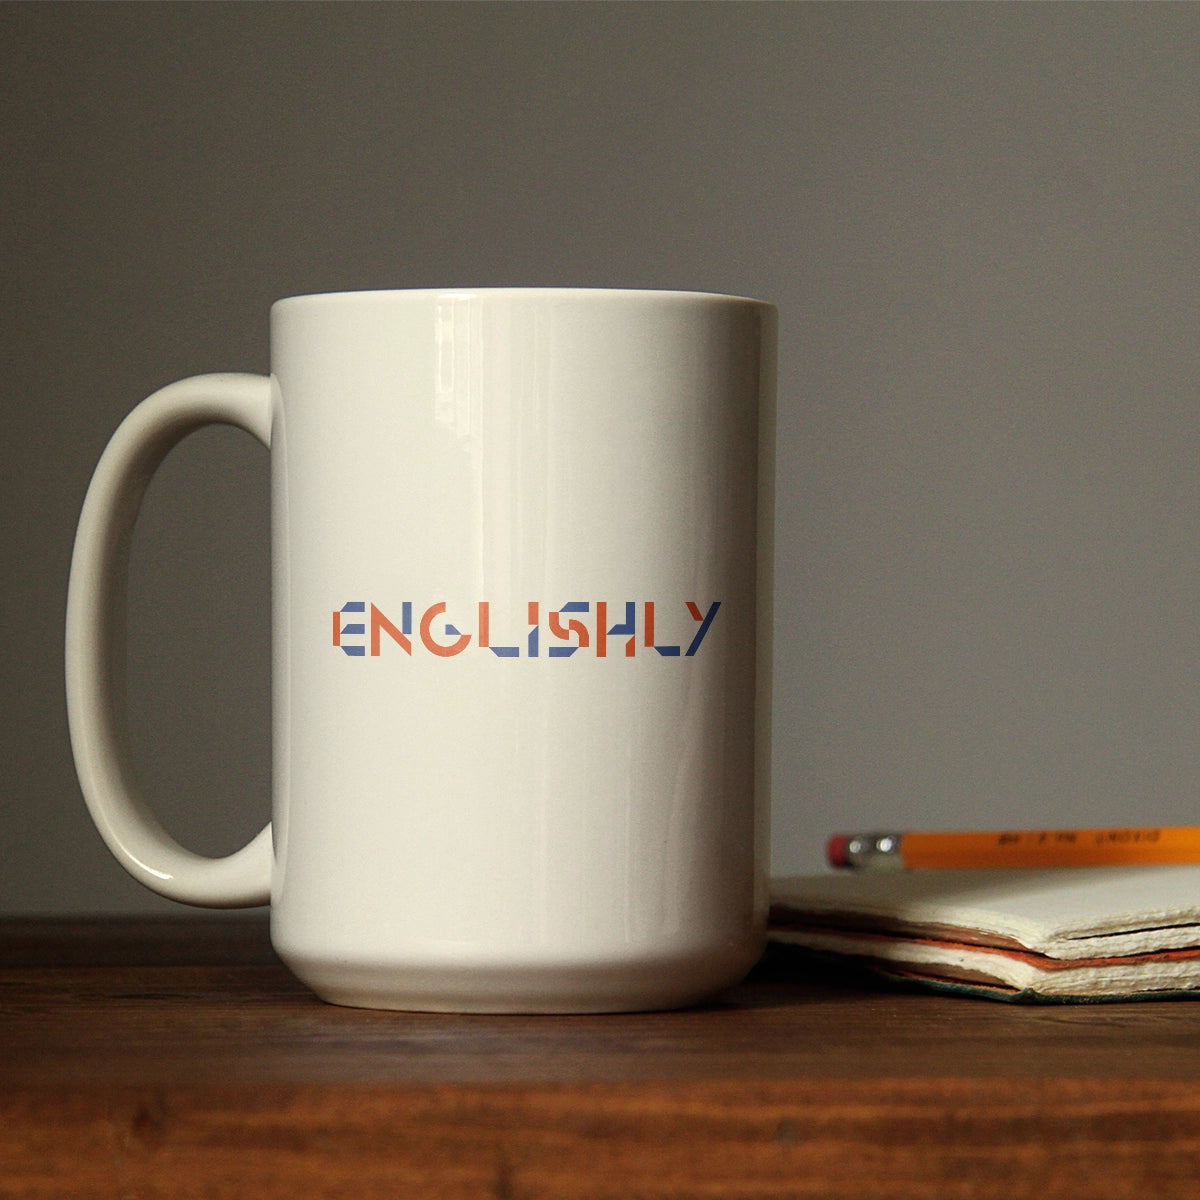 Englishly.com